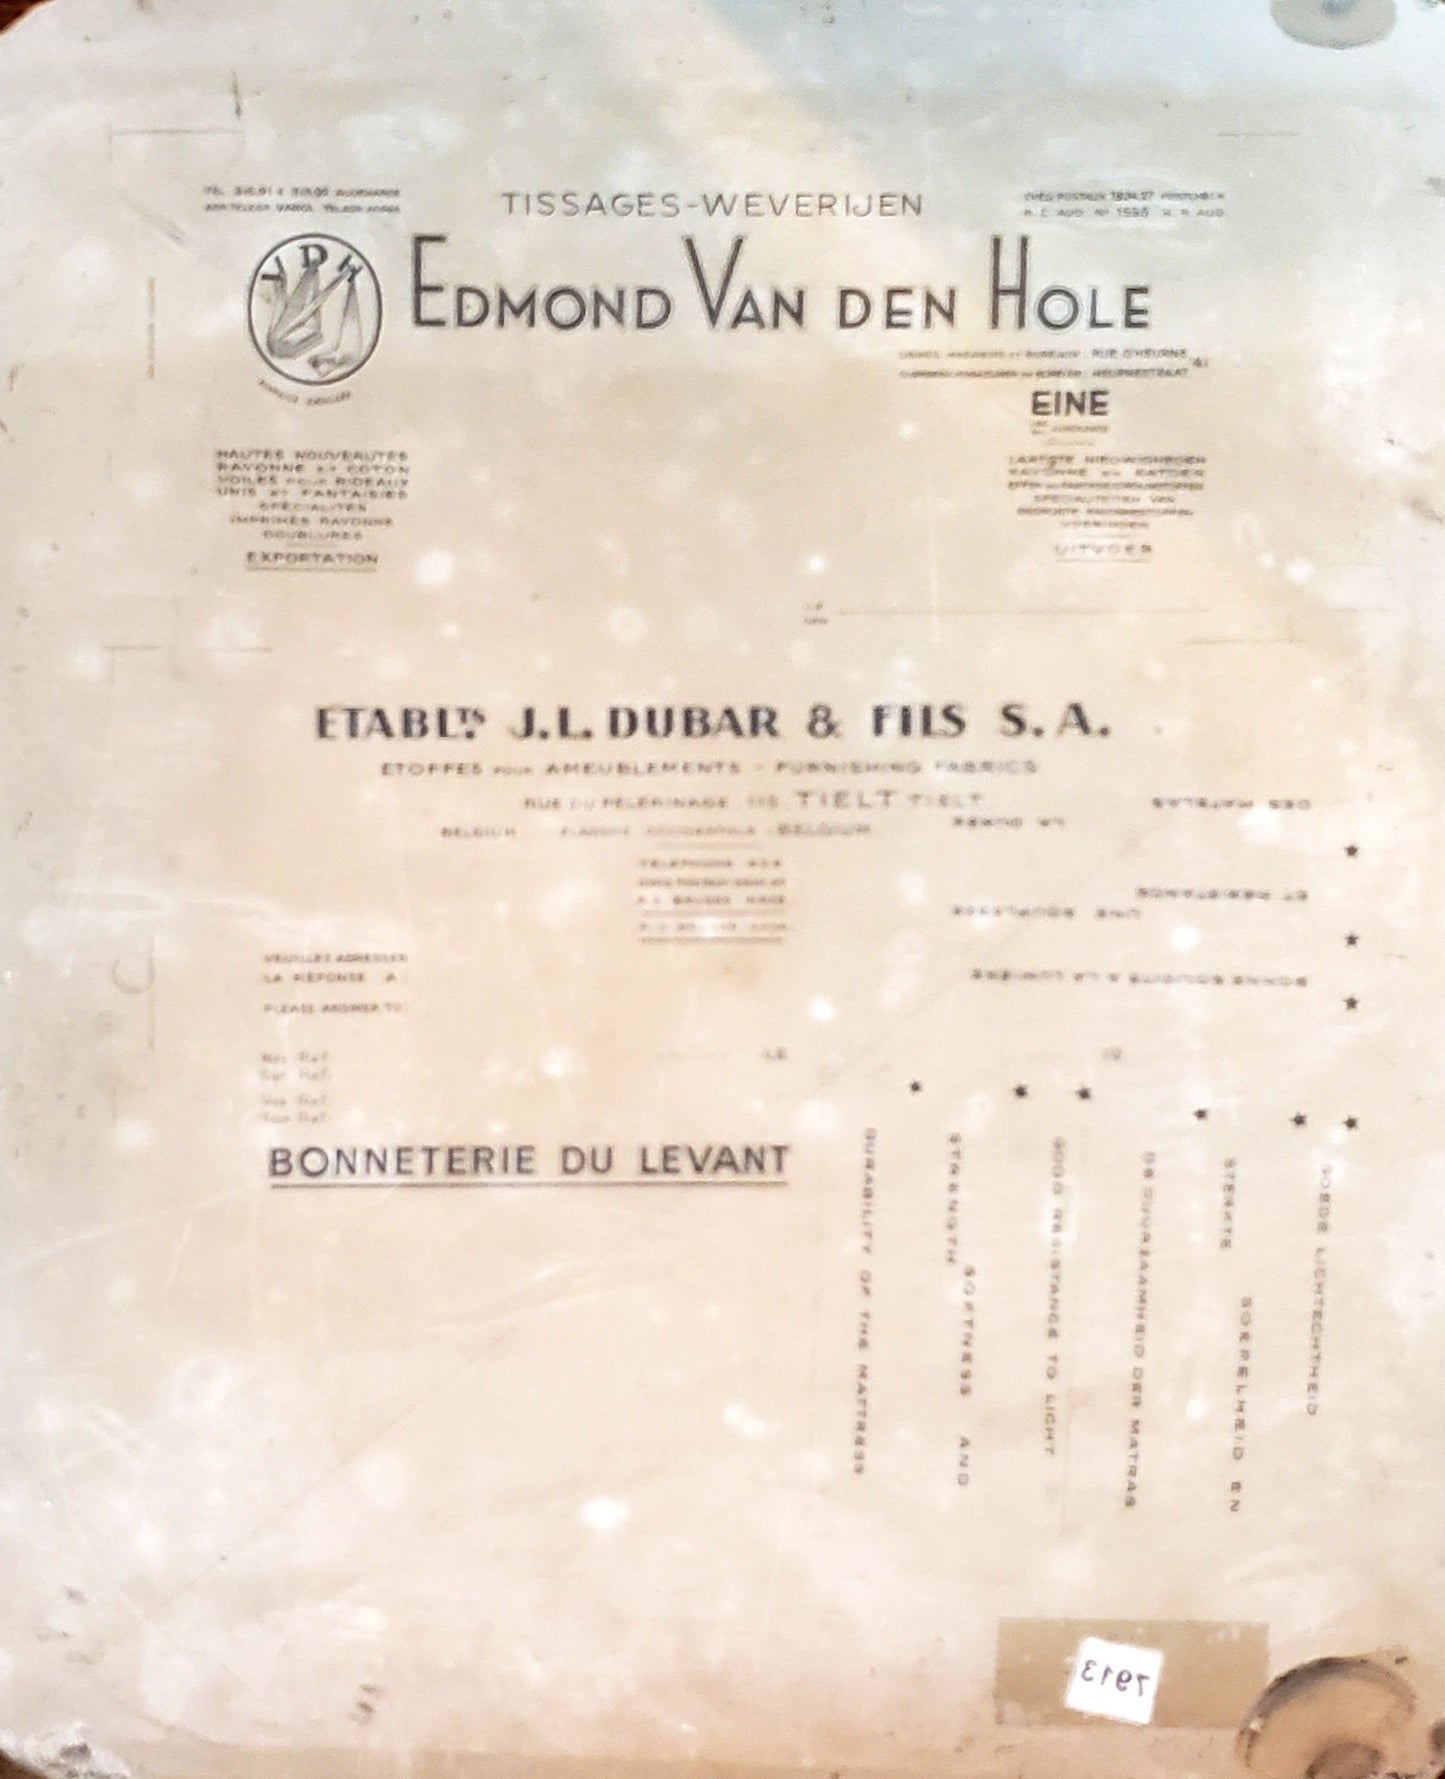 Litho Stone "Edmond Van den Hole"